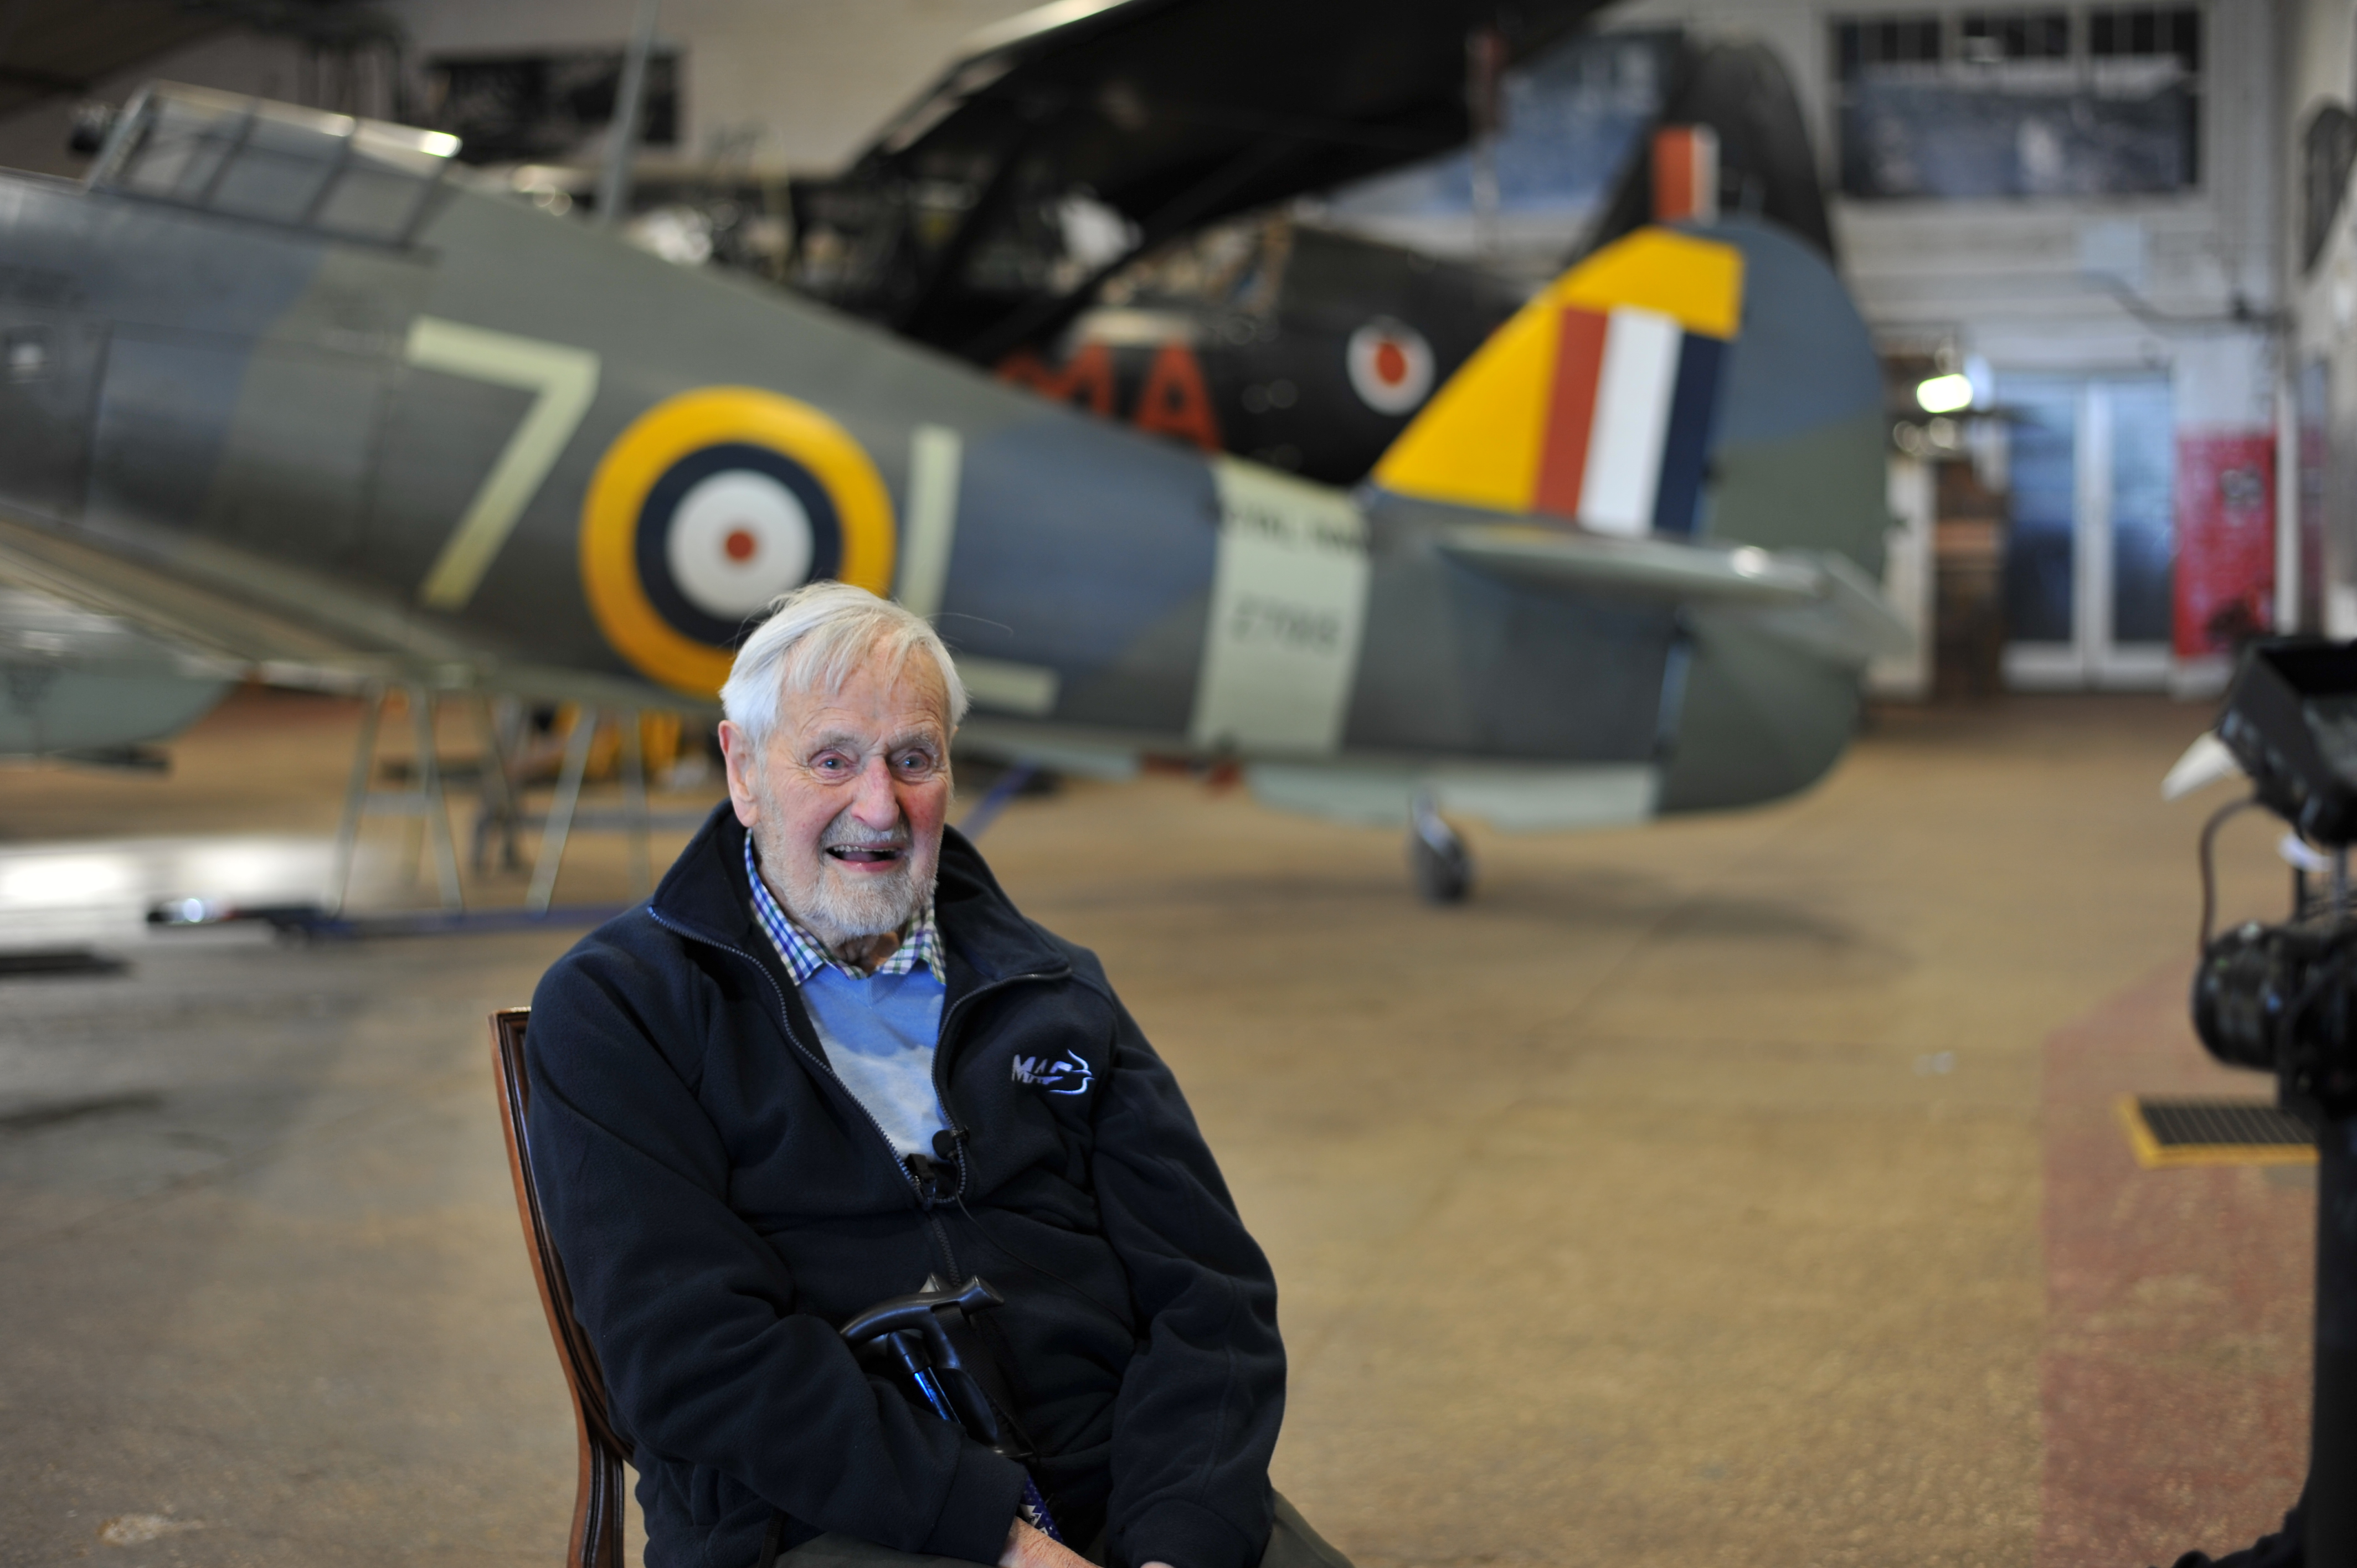 Jack inside hangar with Spitfires.